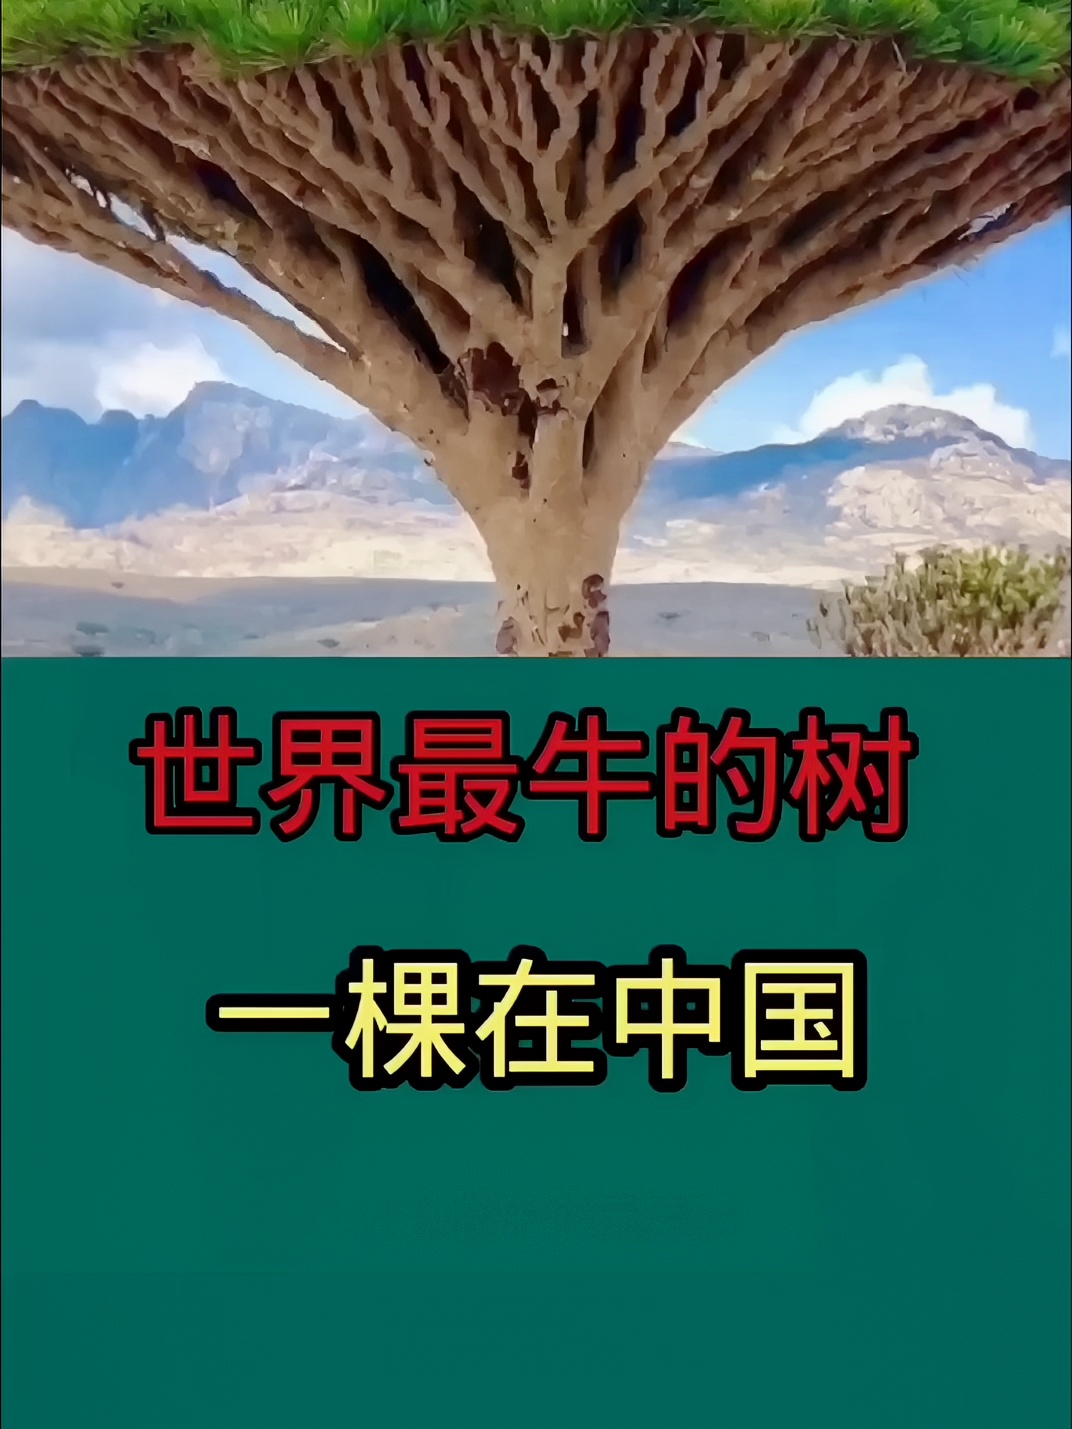 世界上最牛的三棵树，一棵在中国，价值超1亿，一棵常出现在电影里#旅行拍照不露脸